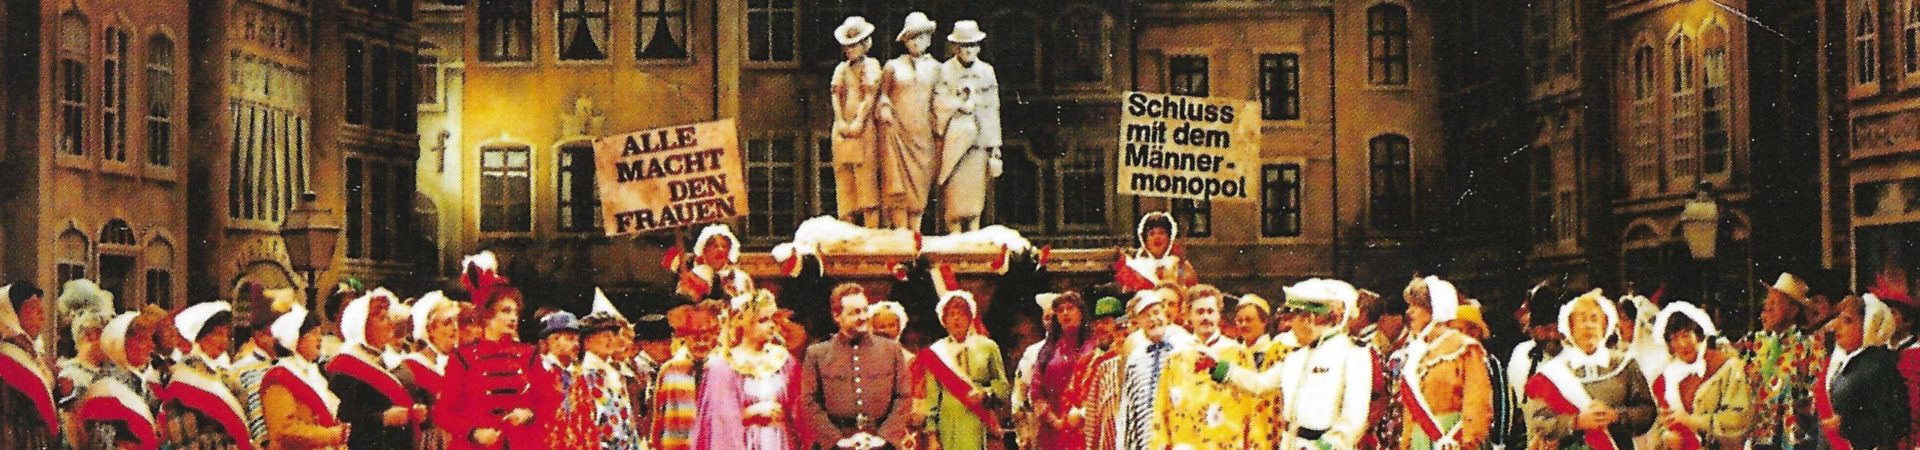 De jecke Wiever vum Heumarkt - Divertissementchen 1991 - Großer Chor im Bühnenbild